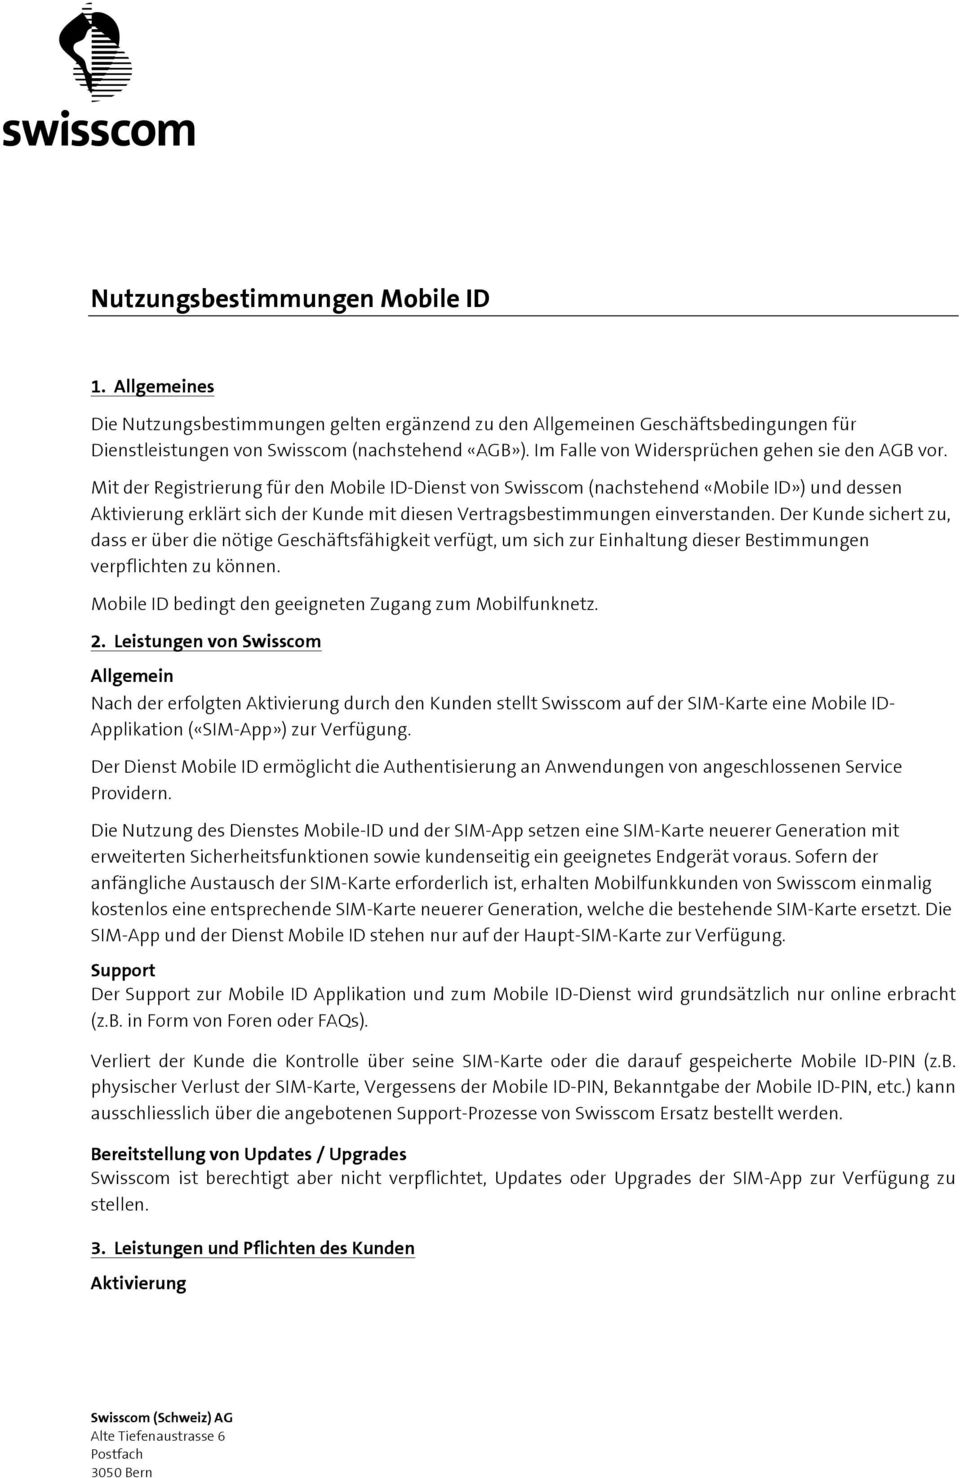 Mit der Registrierung für den Mobile ID-Dienst von Swisscom (nachstehend «Mobile ID») und dessen Aktivierung erklärt sich der Kunde mit diesen Vertragsbestimmungen einverstanden.